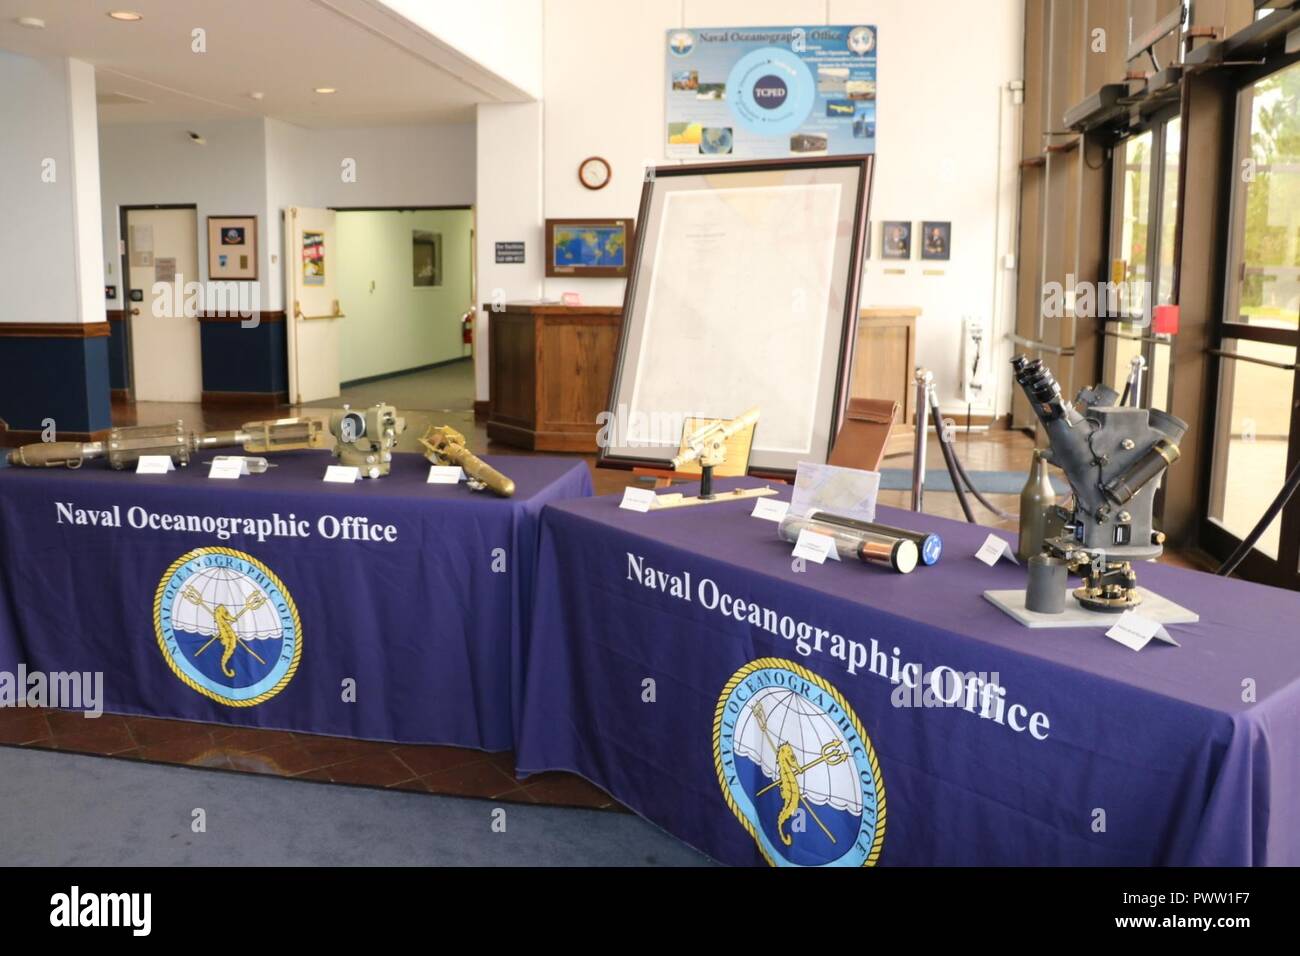 Au cours d'une célébration de la Journée mondiale de l'hydrographie Le 26 juin 2017, le Naval Oceanographic Office affiche l'équipement de levés hydrographiques des années passées dans le hall du commandement pour les participants à voir. Banque D'Images